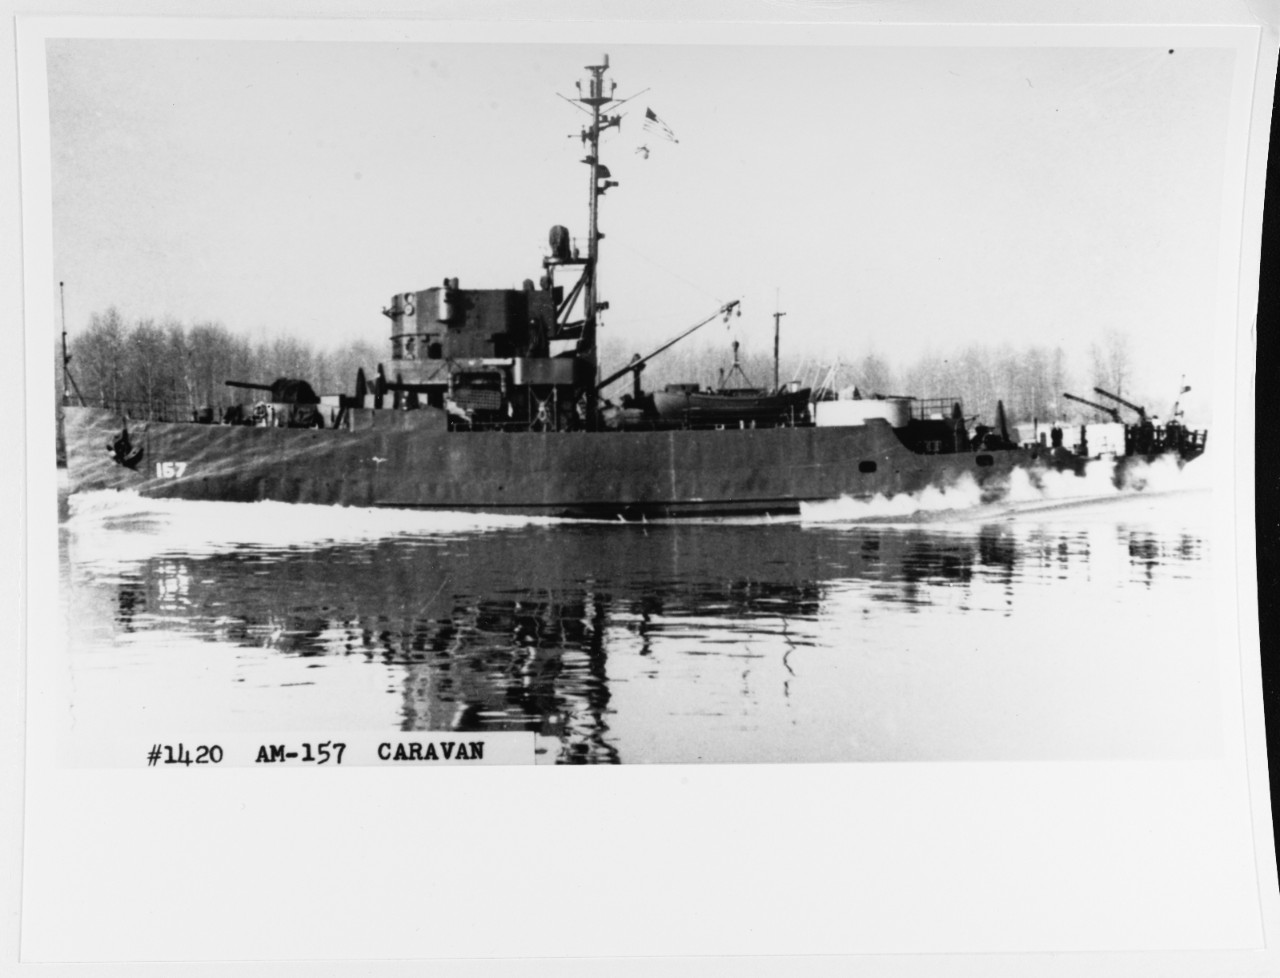 USS CARAVAN (AM-157)